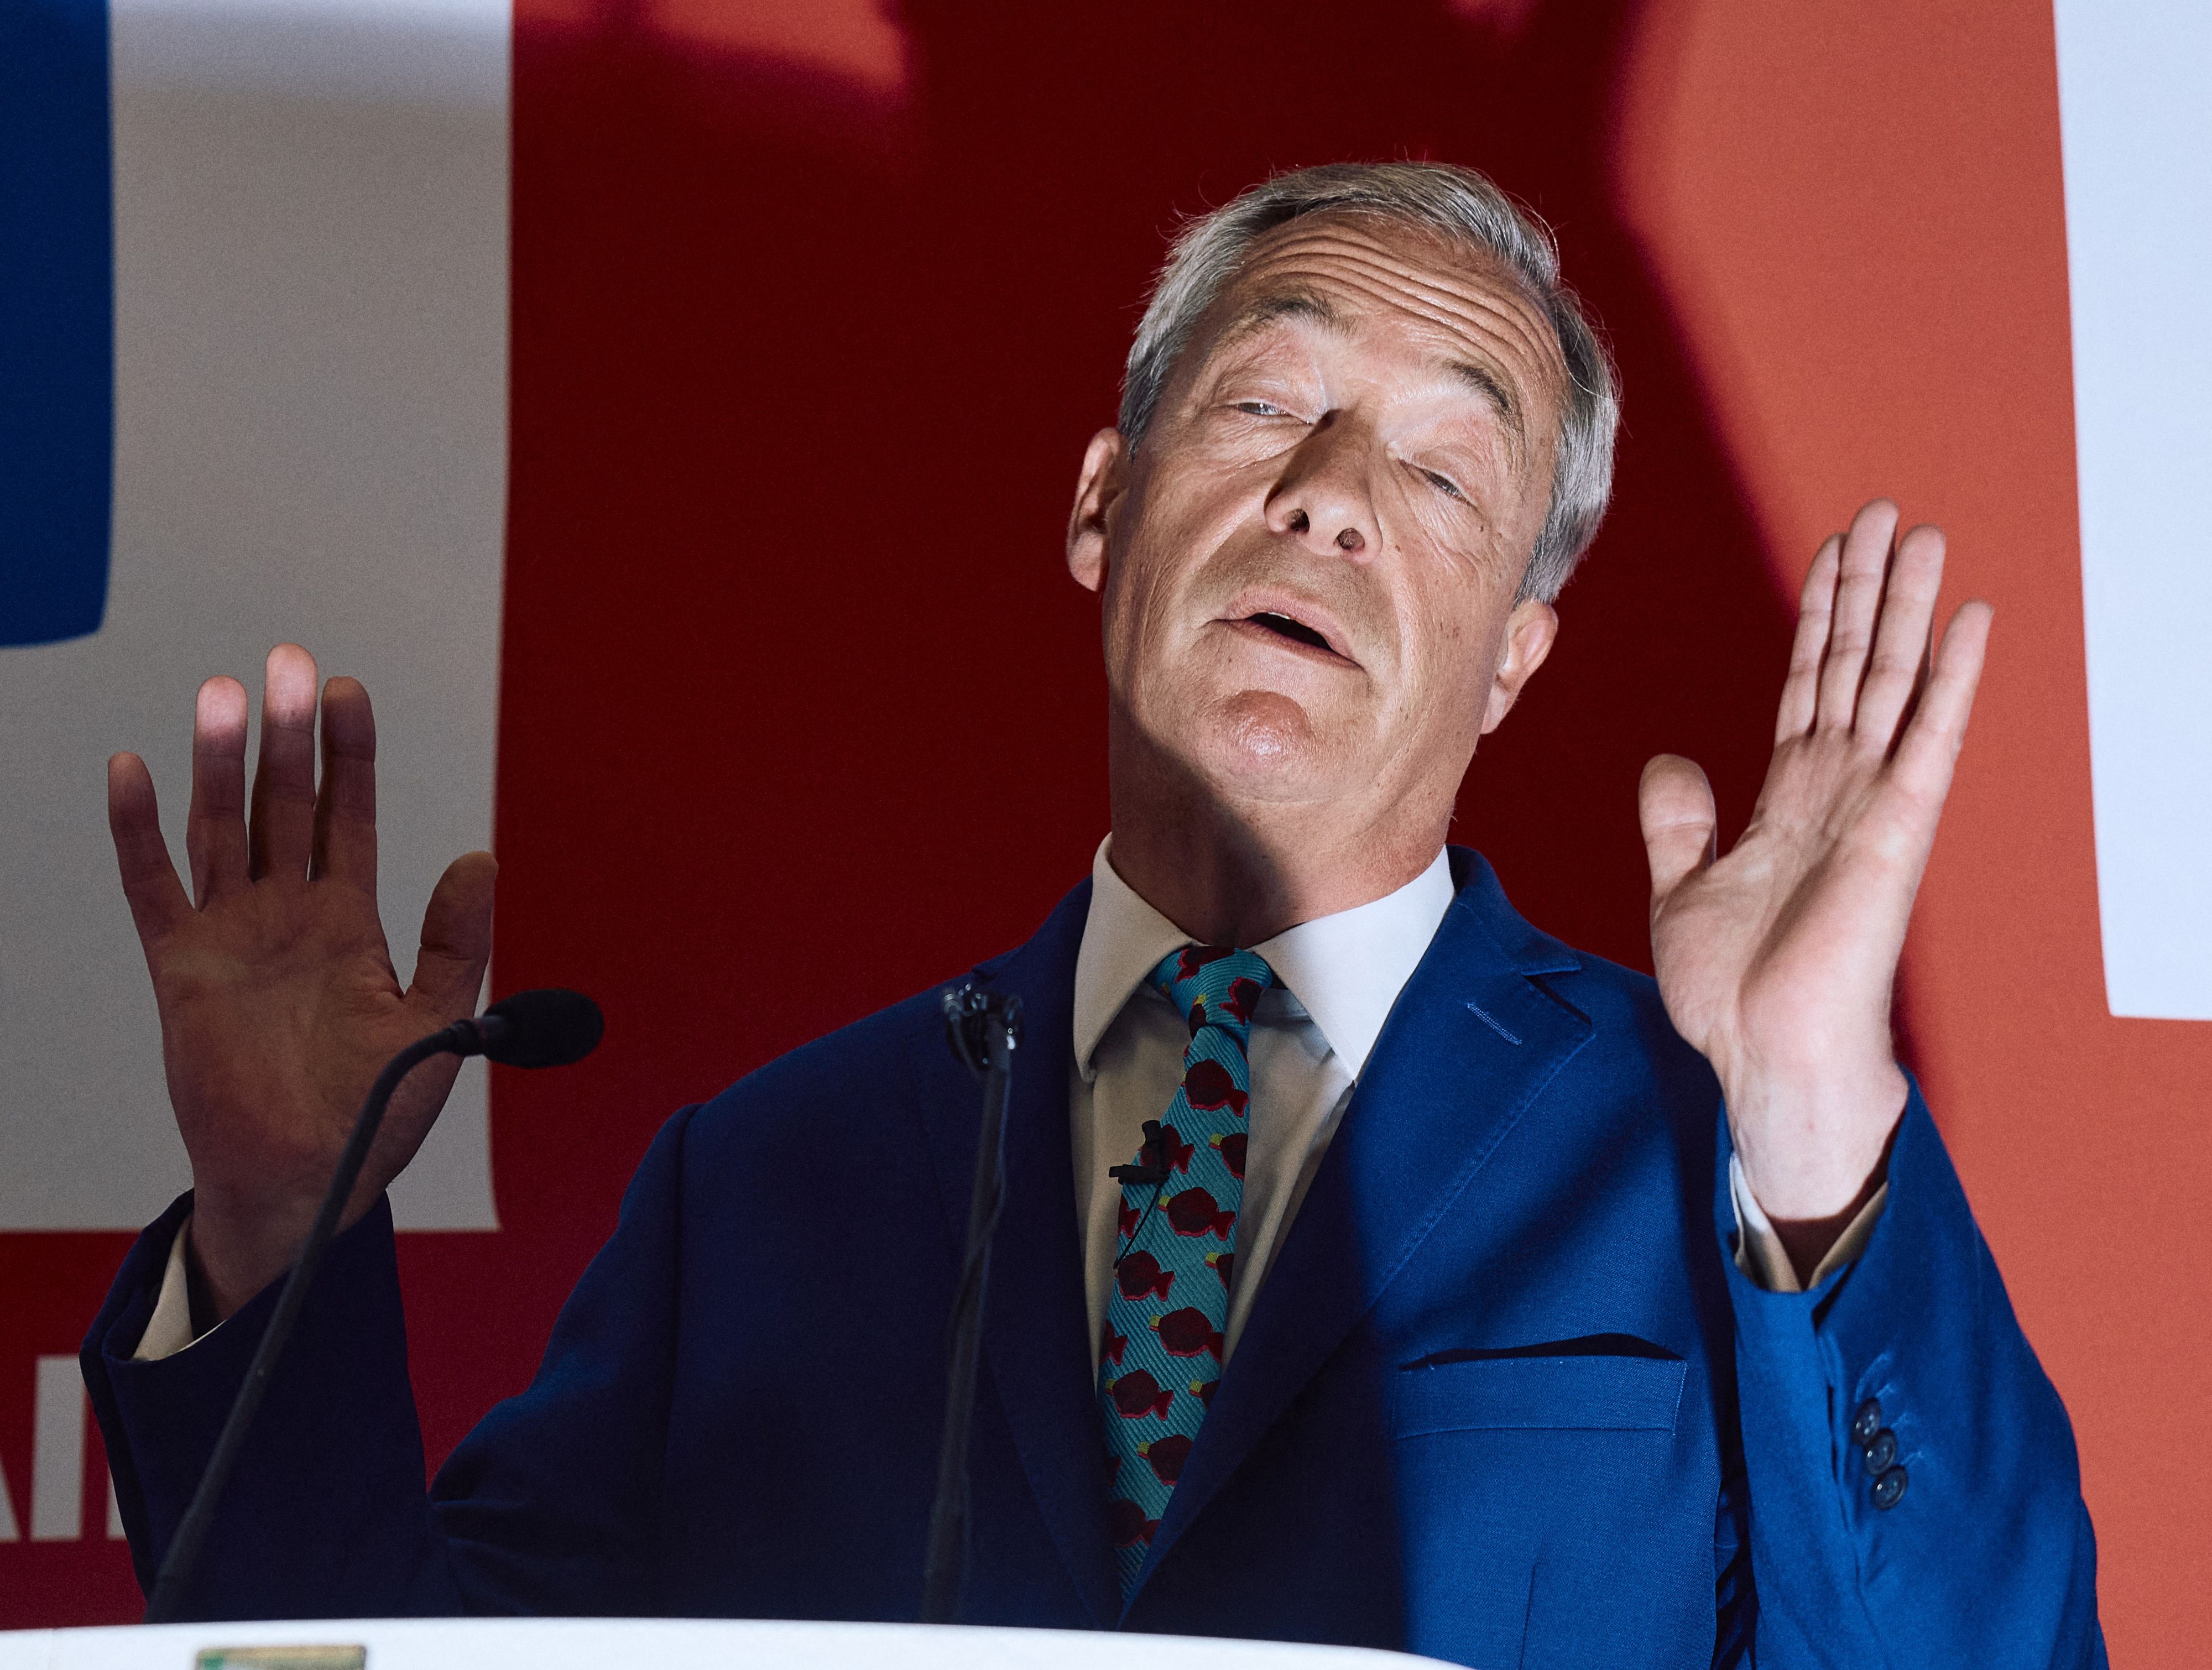 Nigel Farage à nouveau visé par des jets d'objets